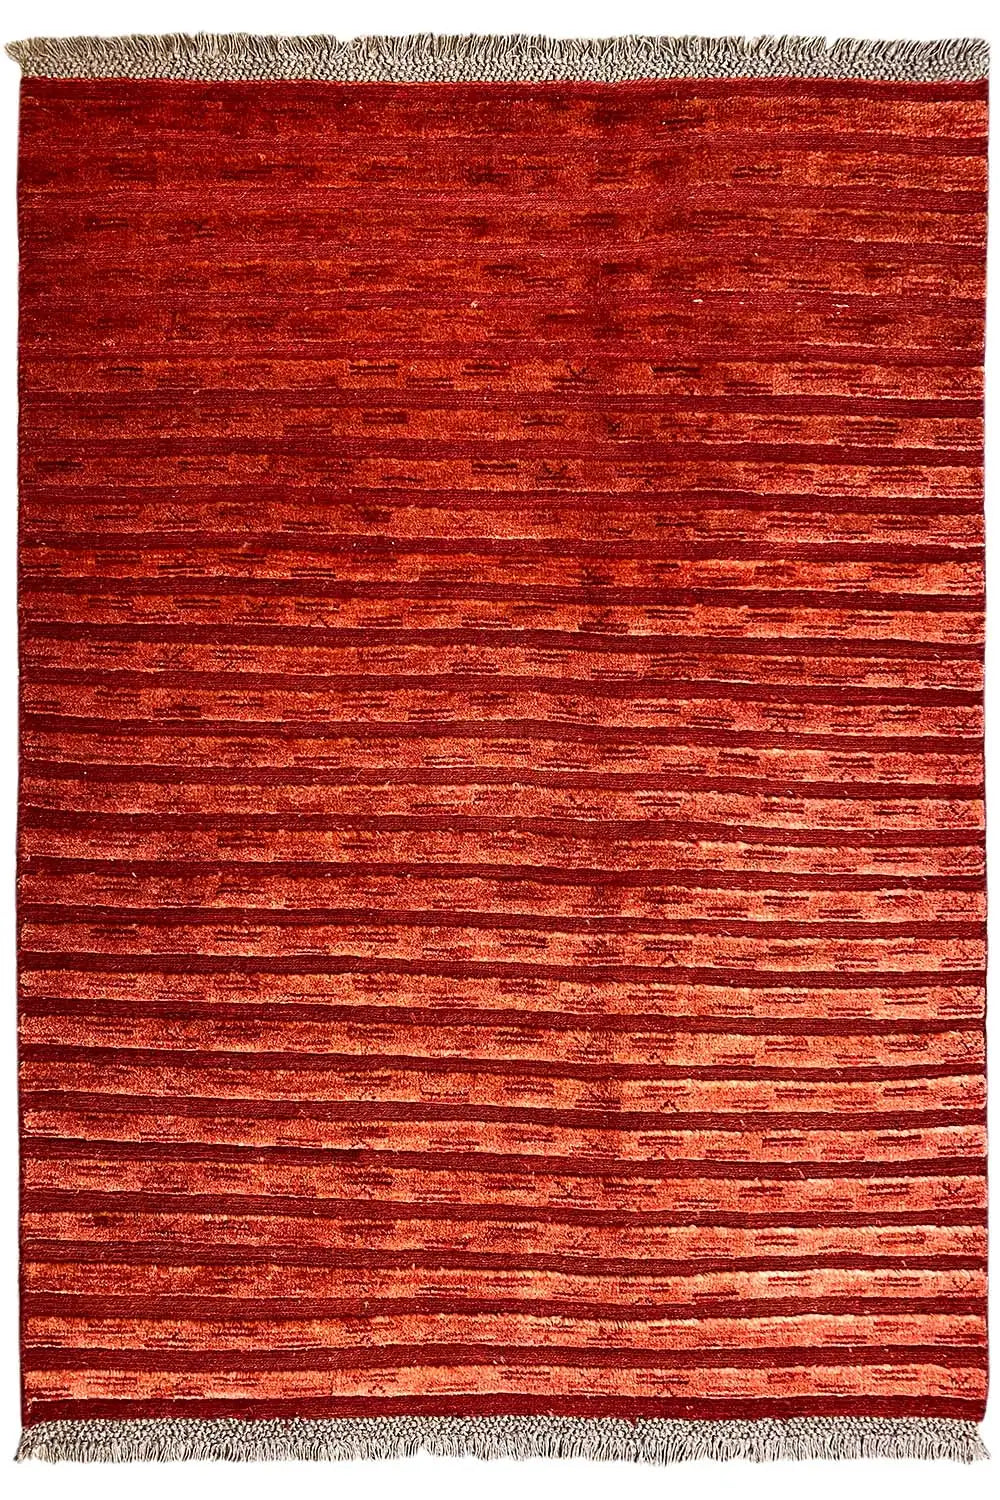 Gabbeh - (189x139cm) - German Carpet Shop